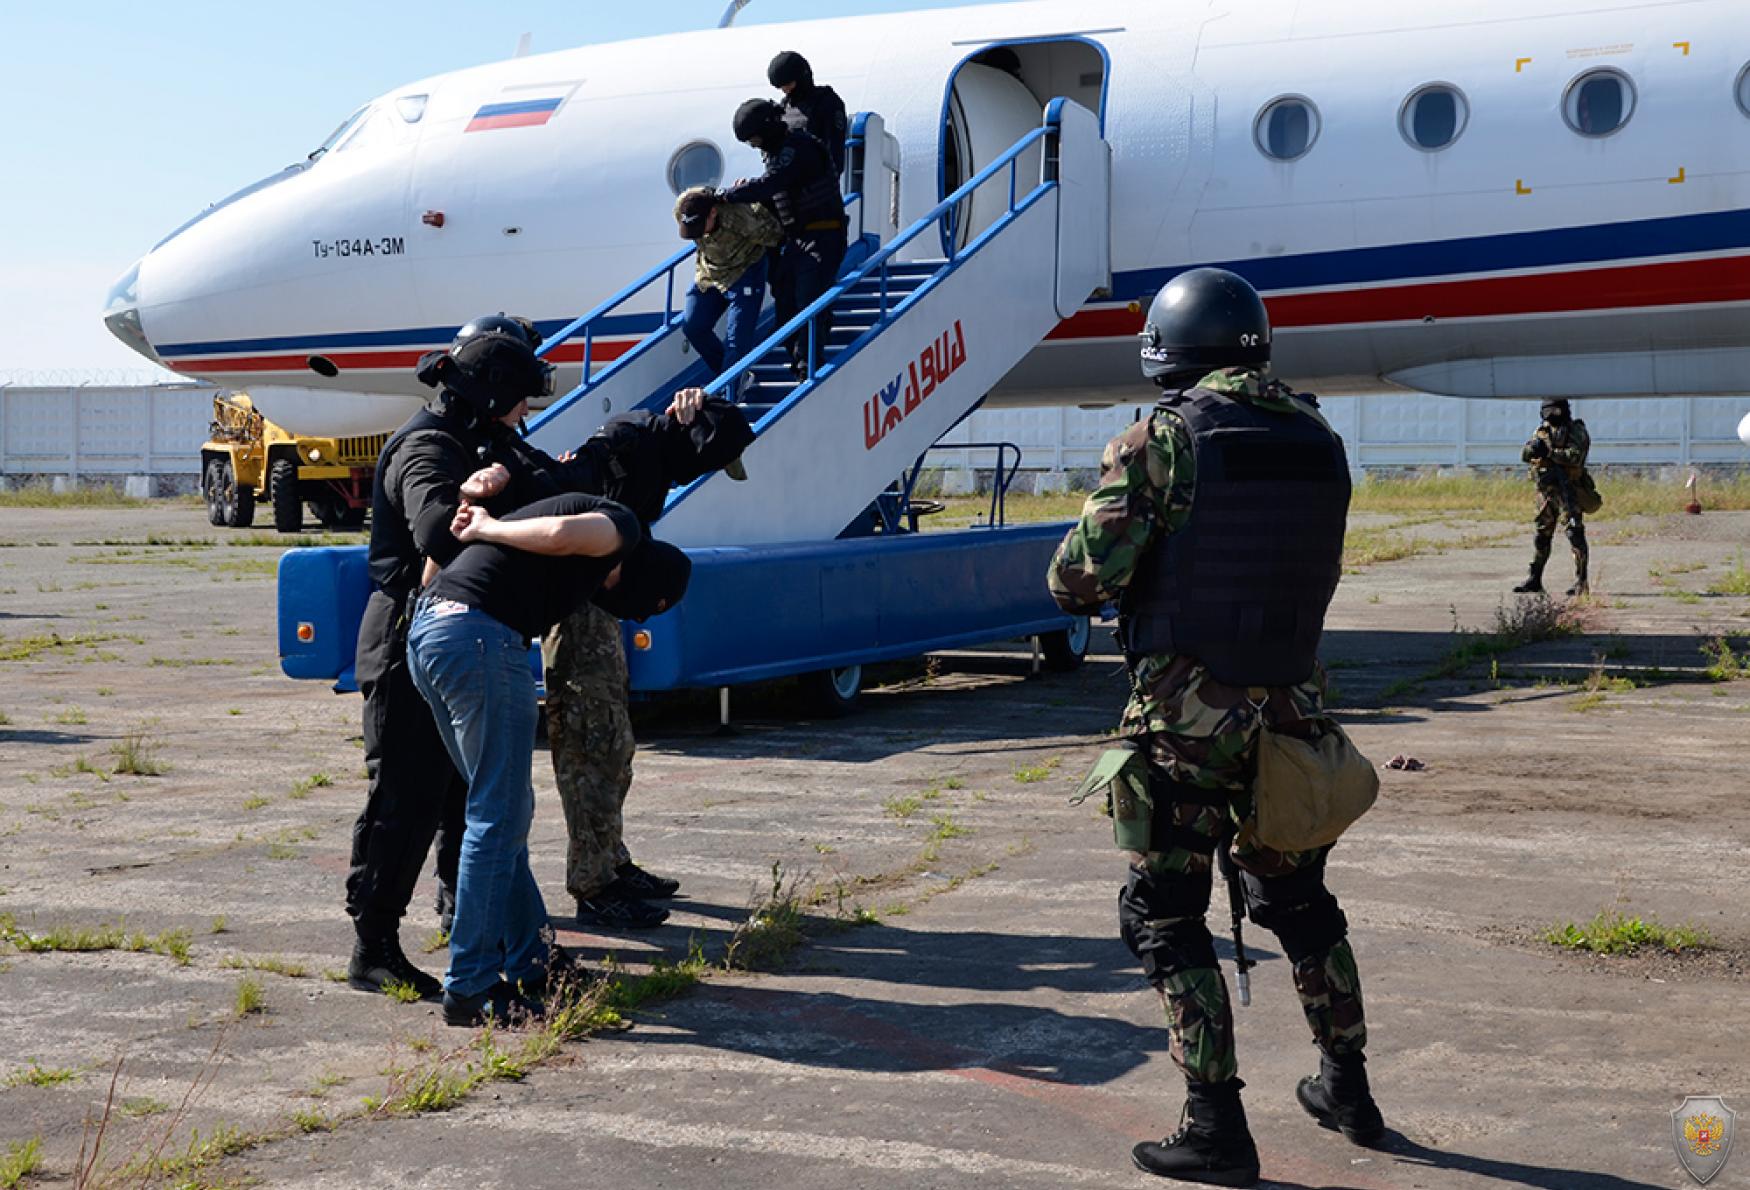 Оперативным штабом в Удмуртской Республике проведено антитеррористическое тактико-специальное учение «Метель – Набат 2018»